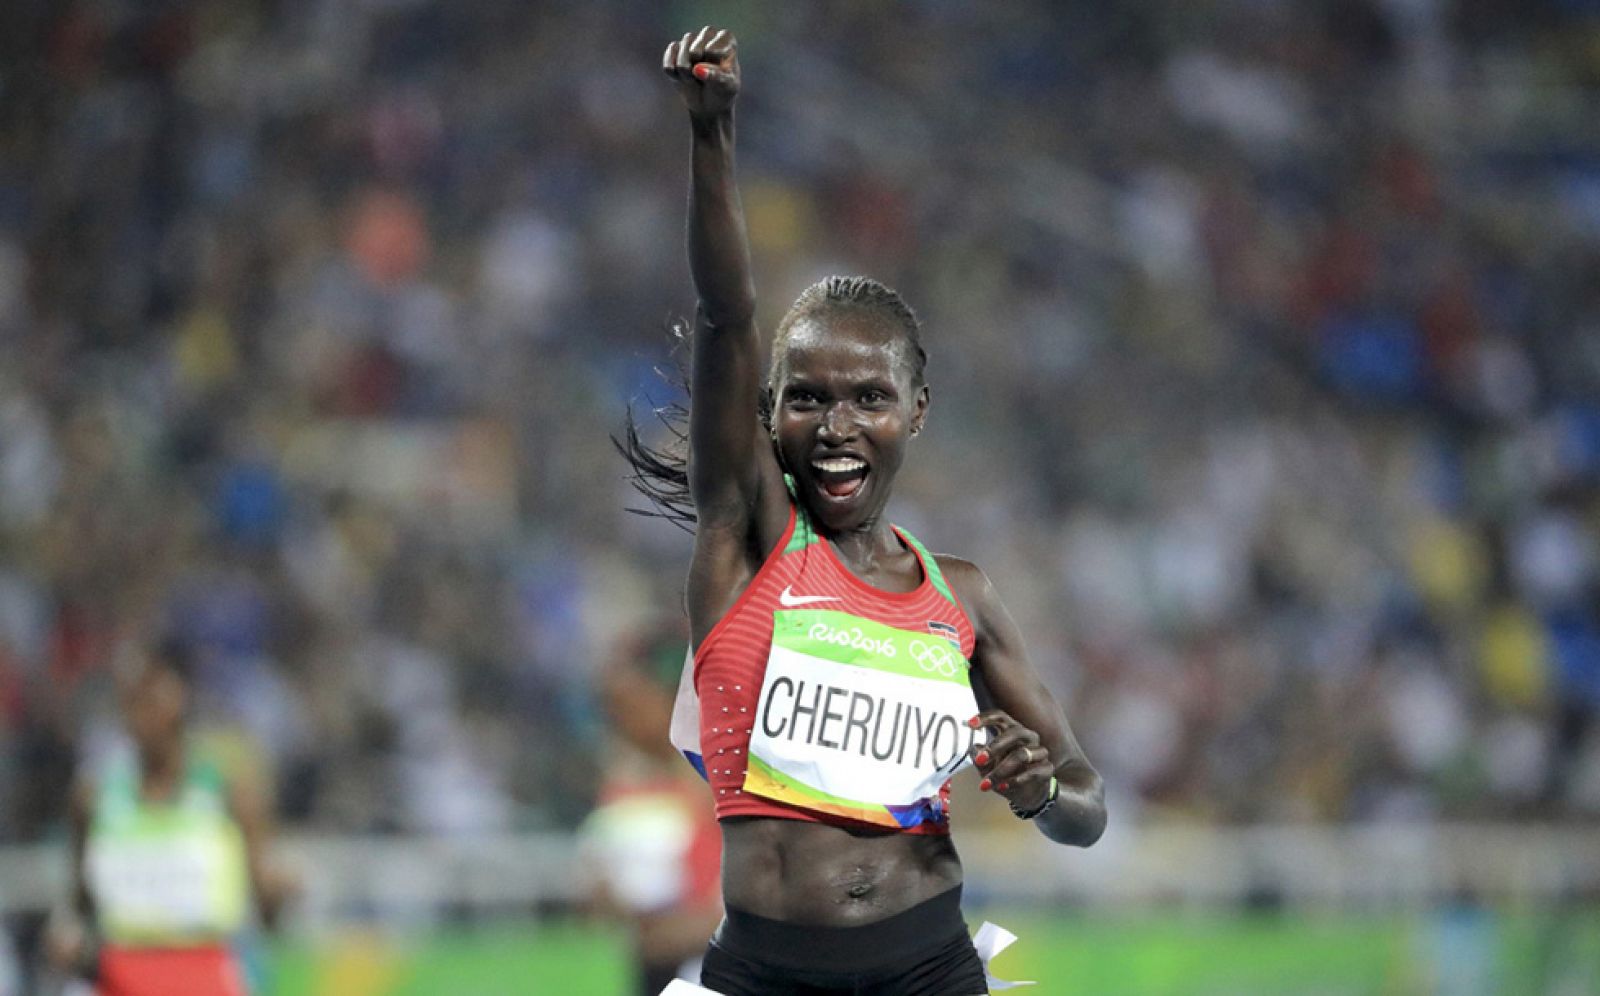 Río 2016 - Atletismo | La keniana Cheruiyot se venga de la etíope Ayana en los 5.000